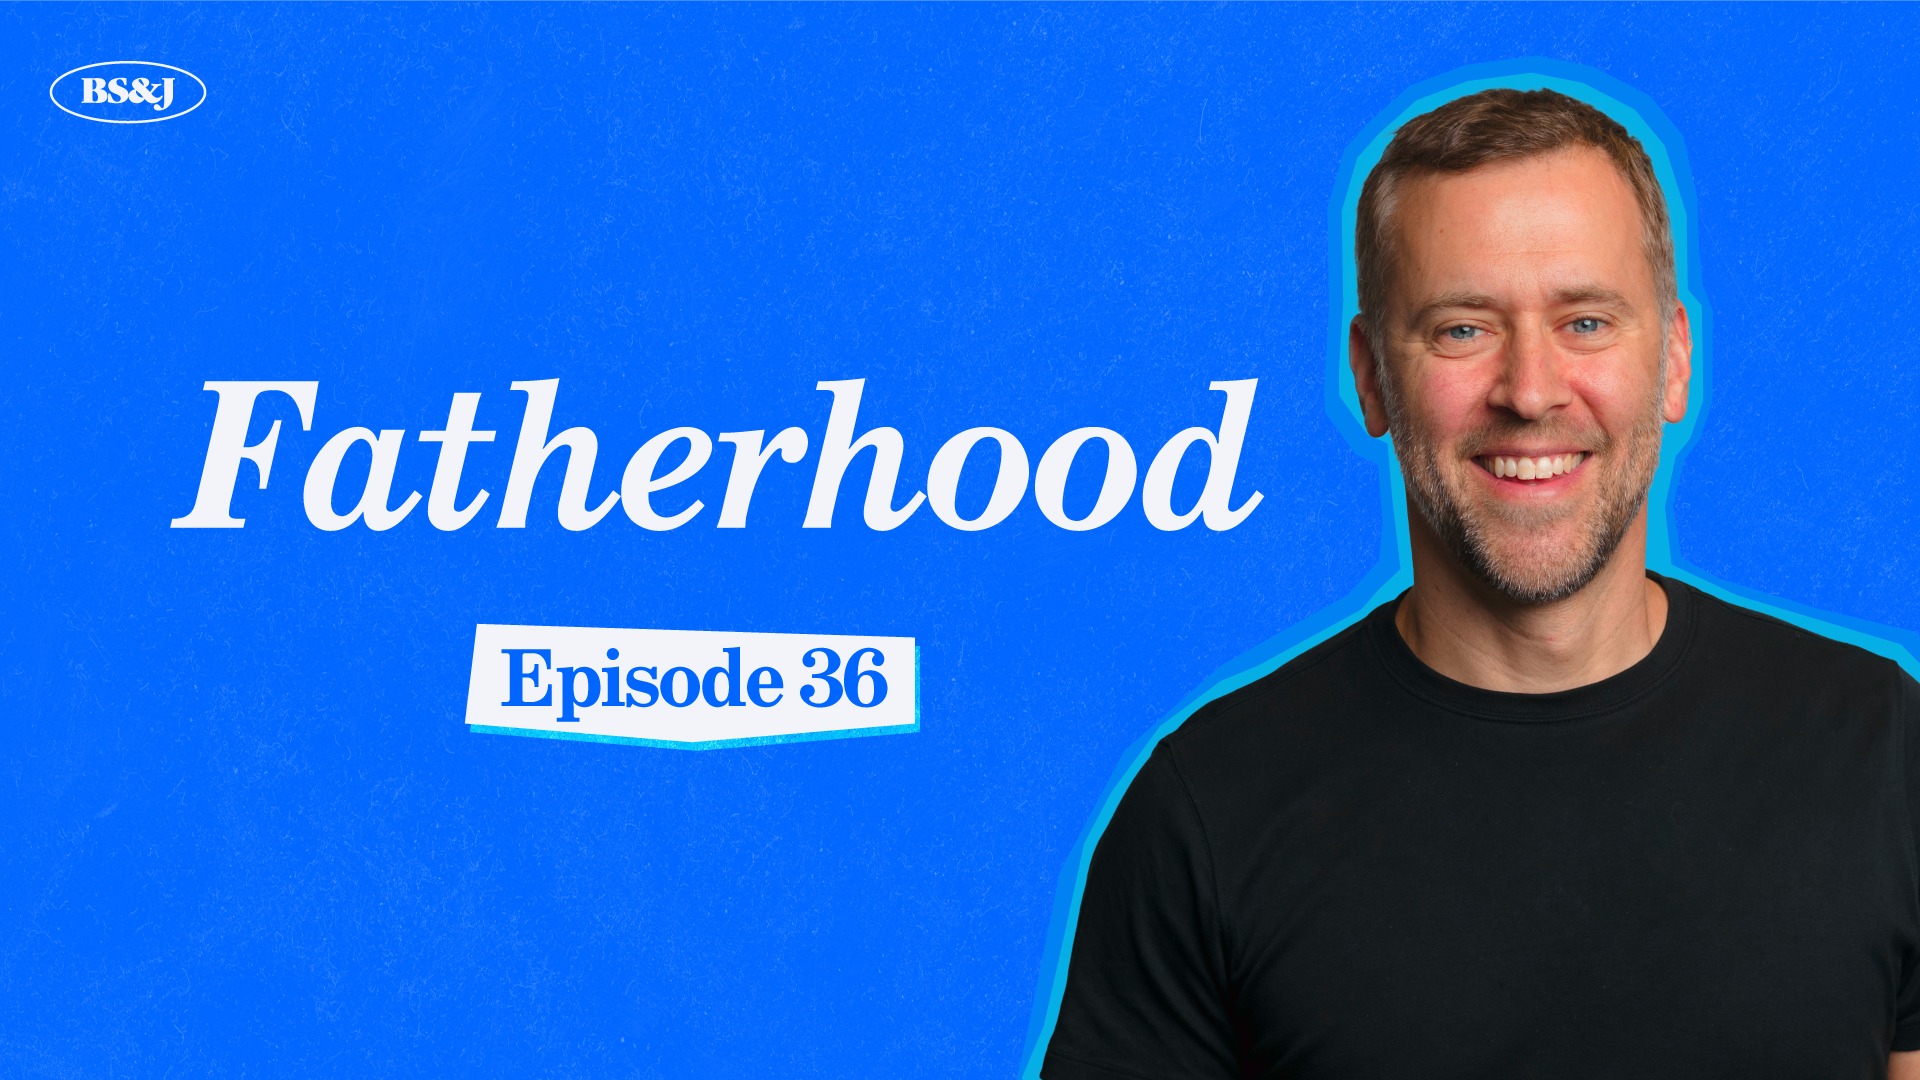 Episode 36 – Fatherhood